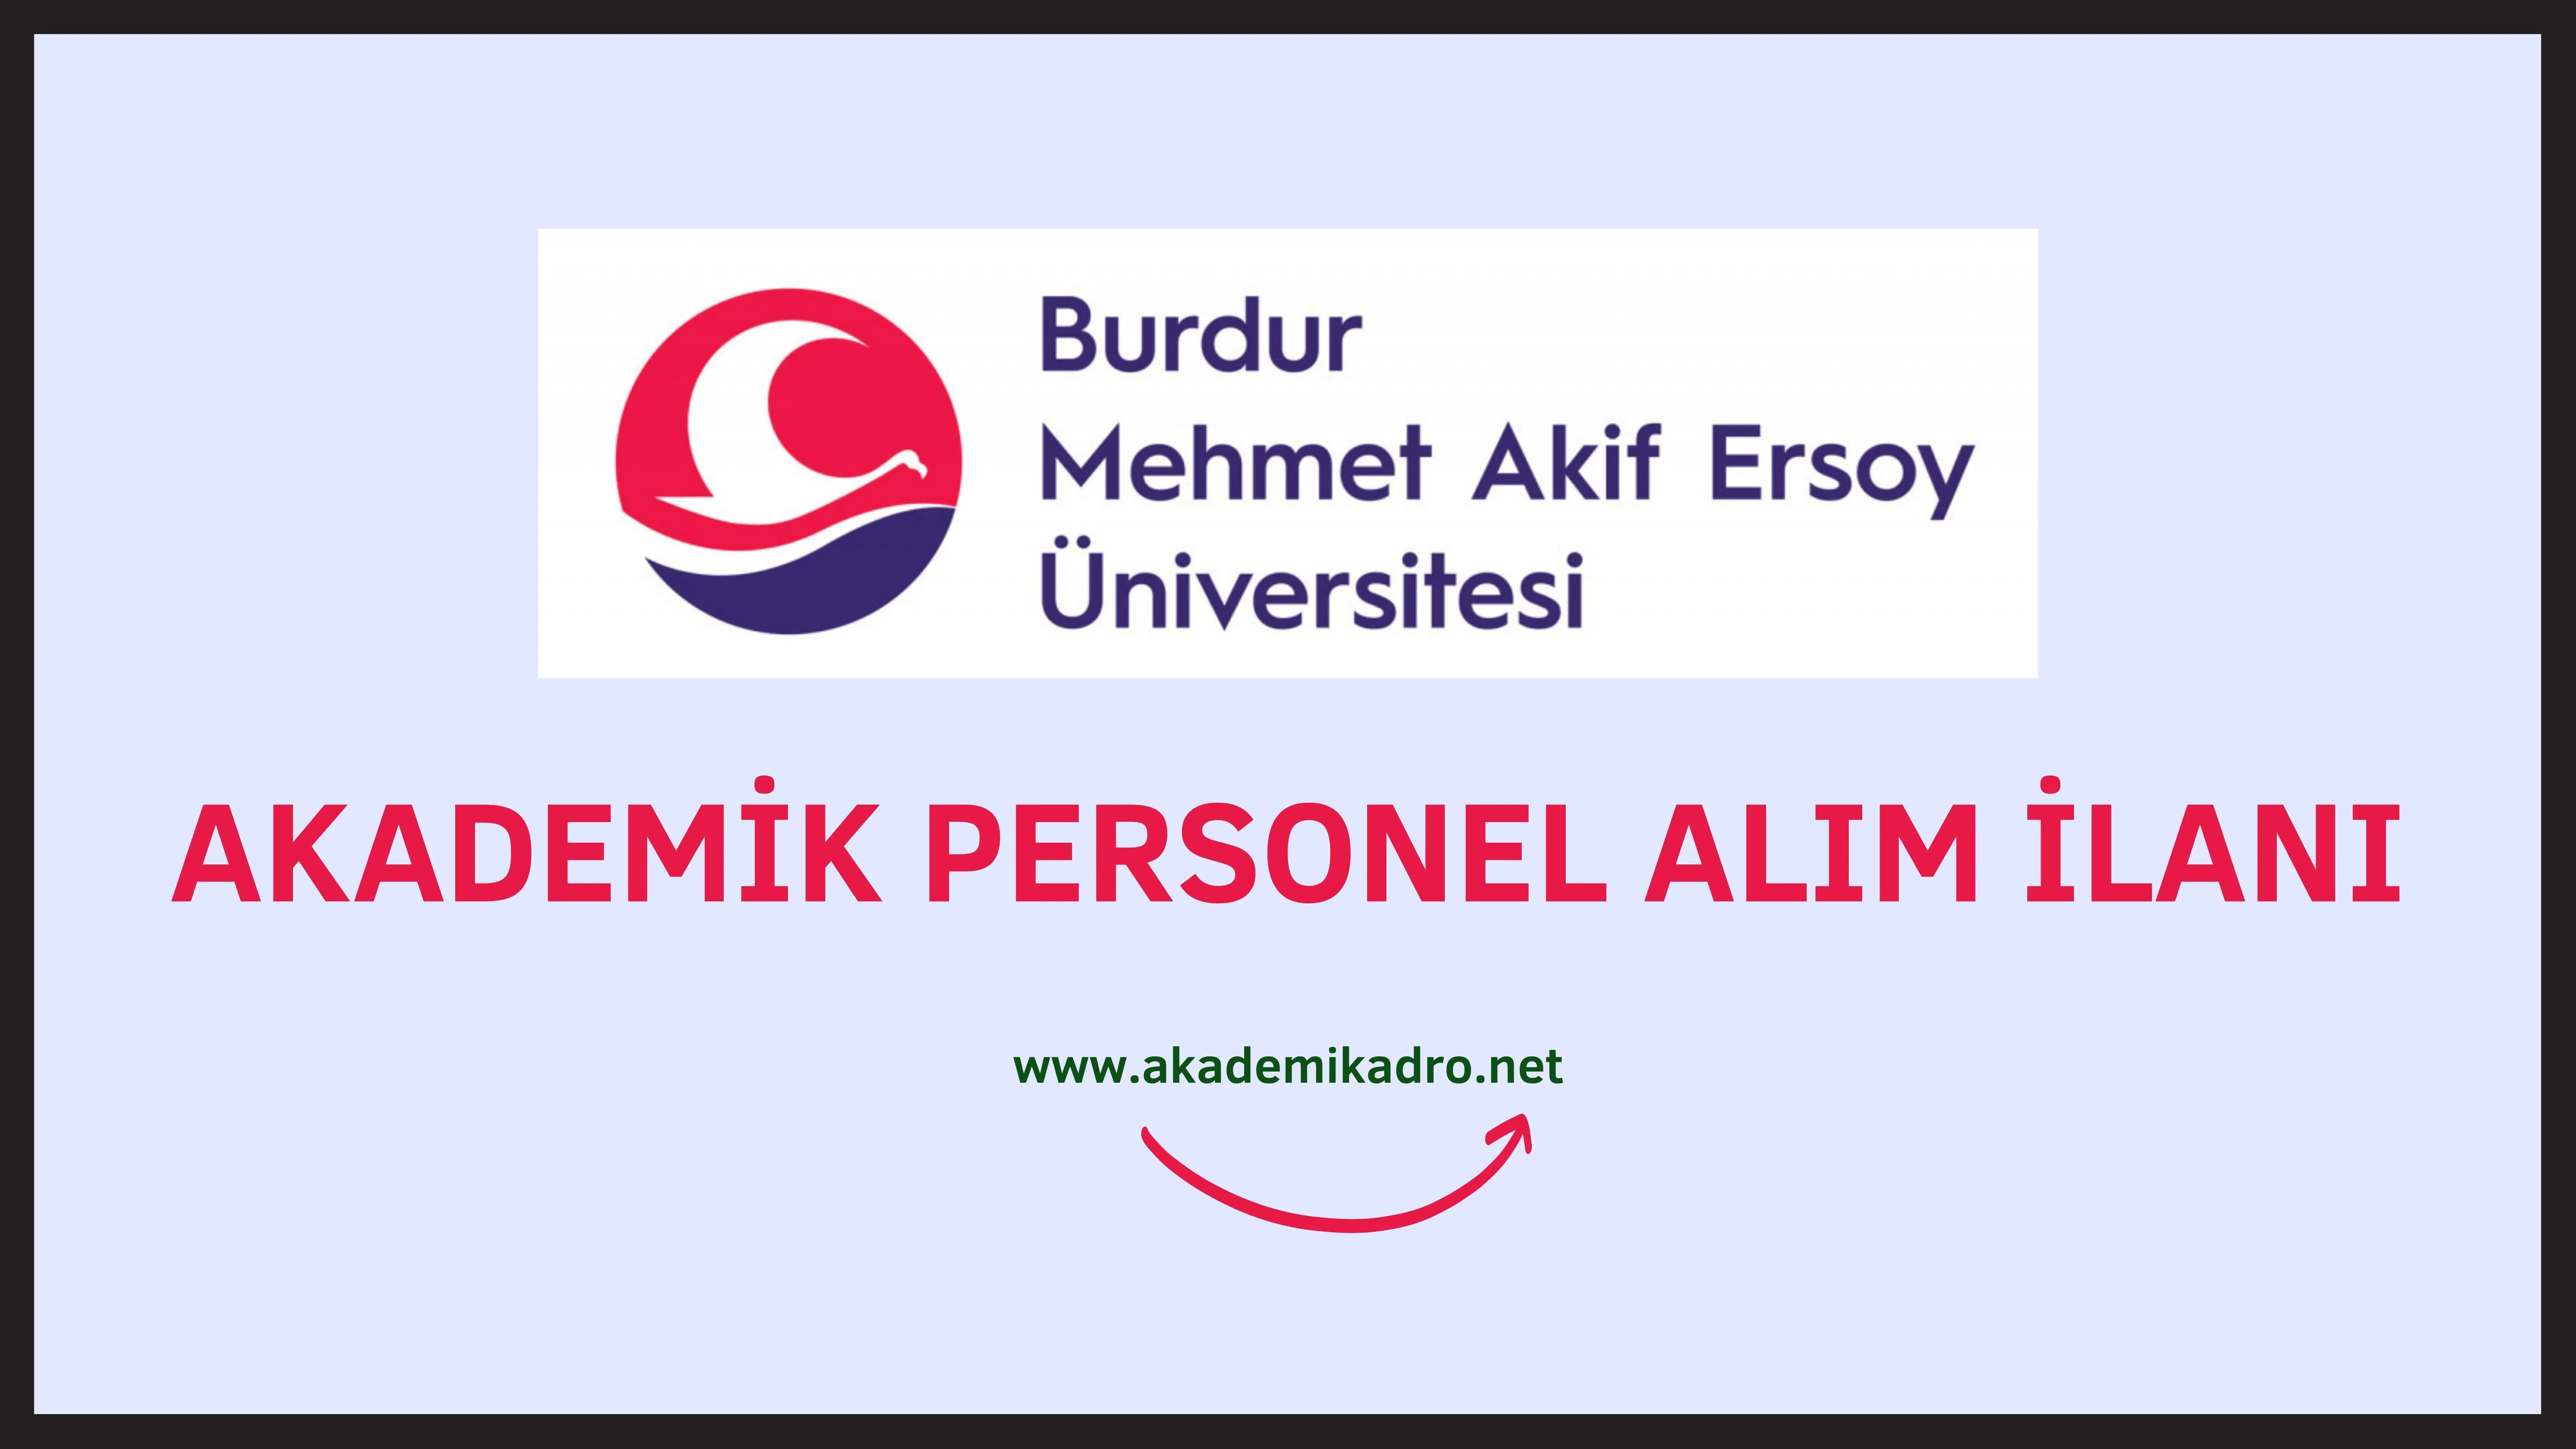 Burdur Mehmet Akif Ersoy Üniversitesi birçok alandan 48 Öğretim üyesi alacak.